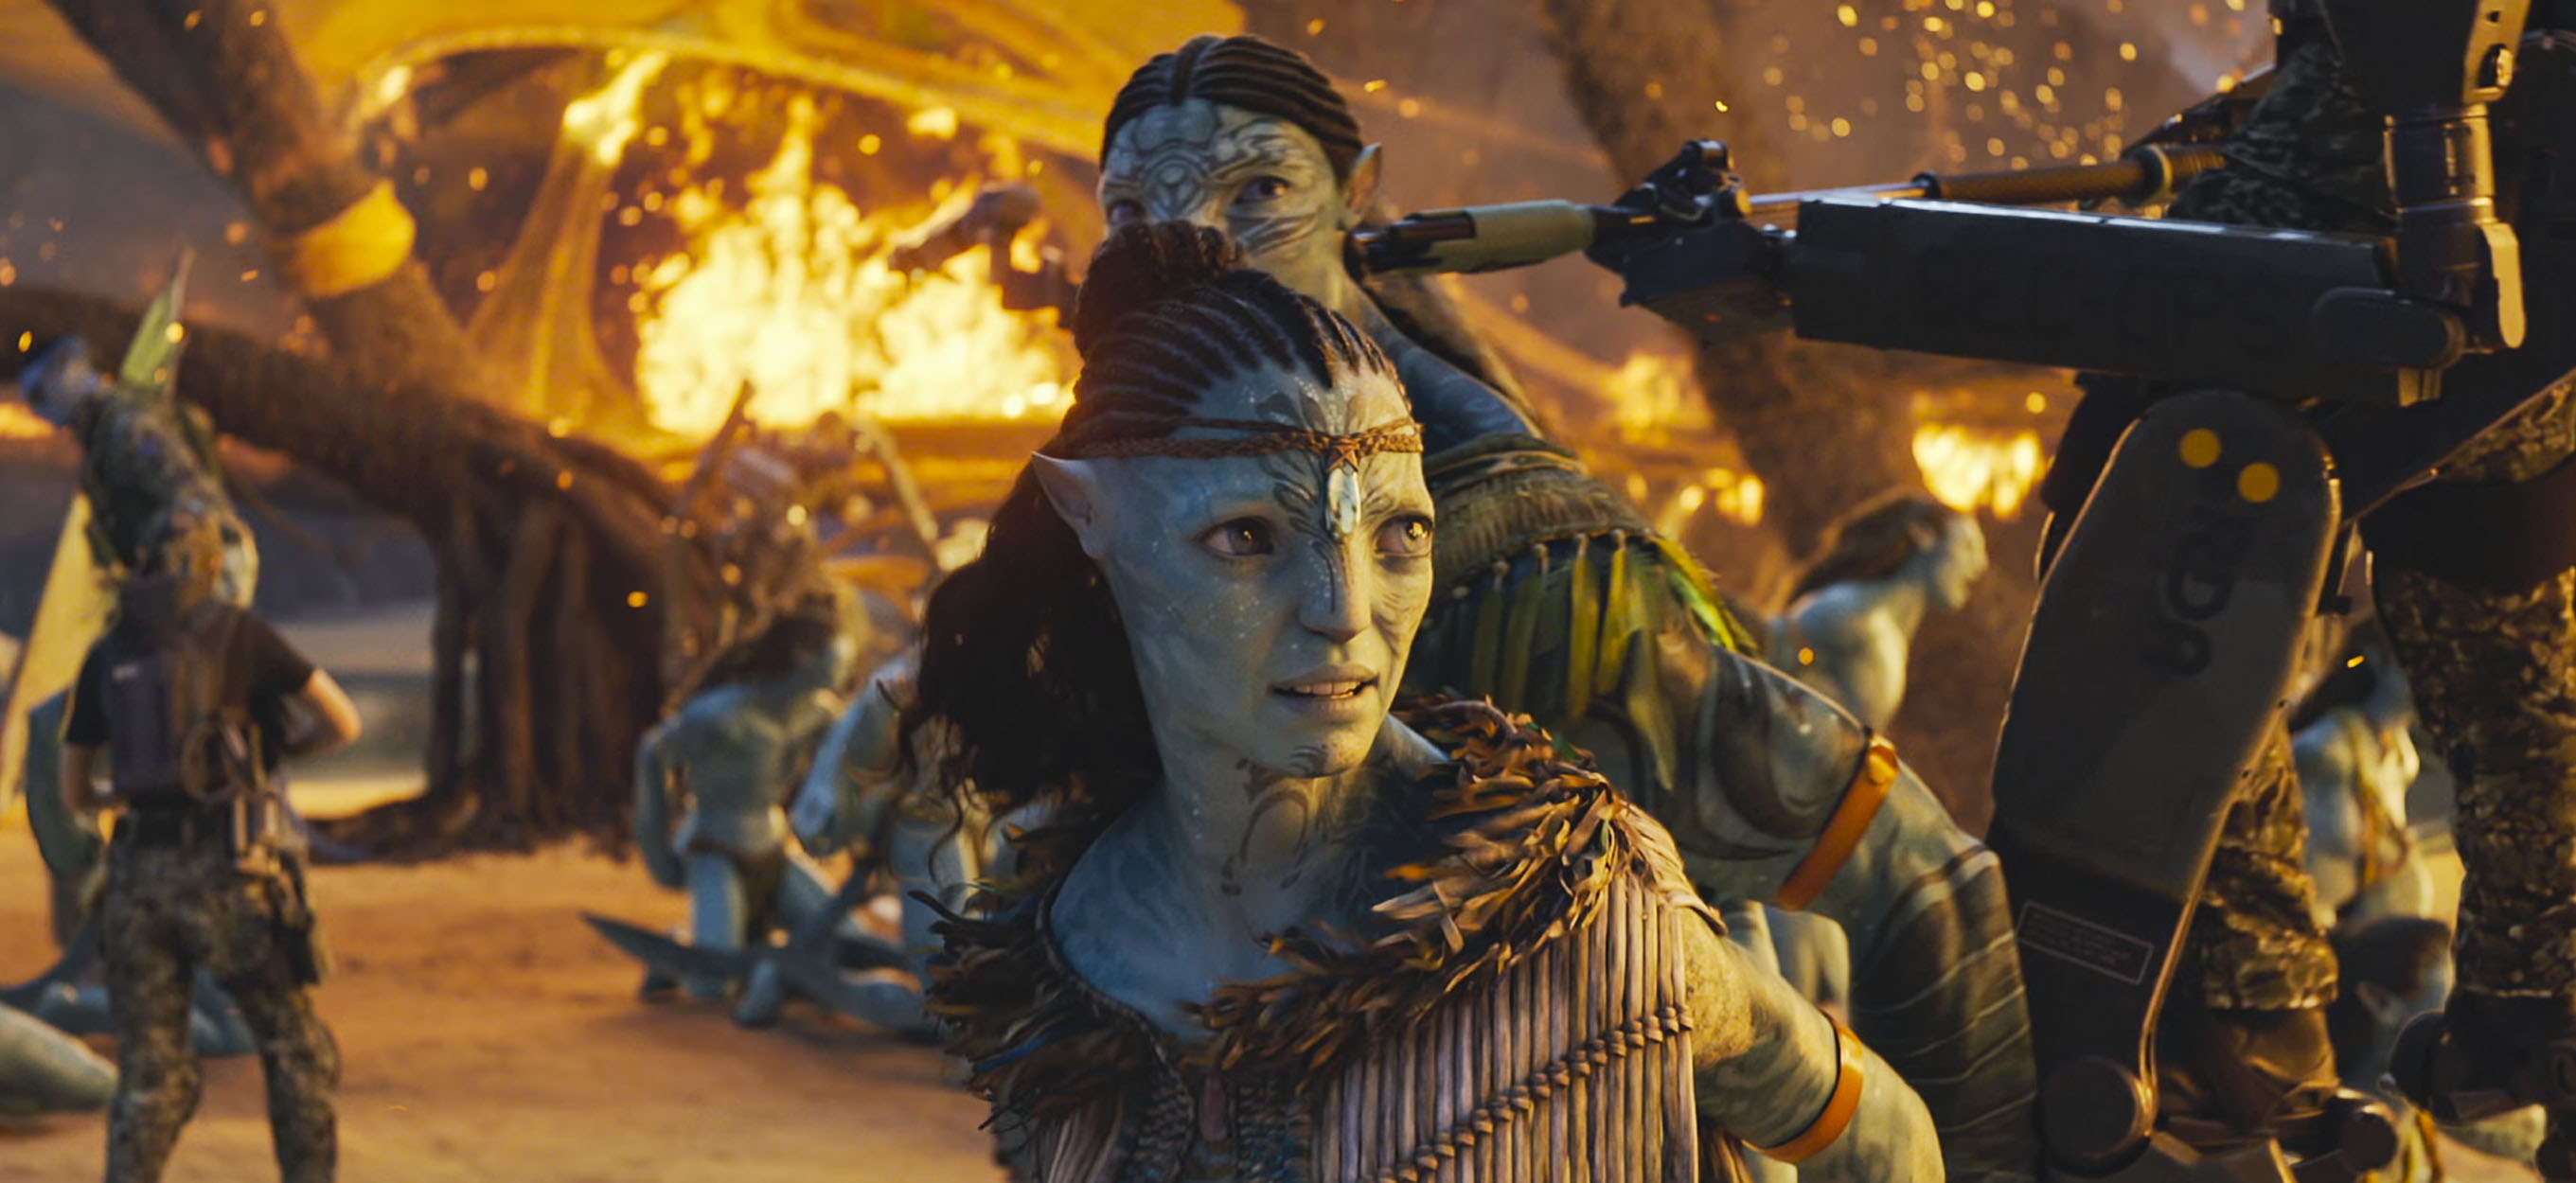 Avatar 2 chính thức tấn công rạp phim cuối năm 2020  VTC Now  YouTube